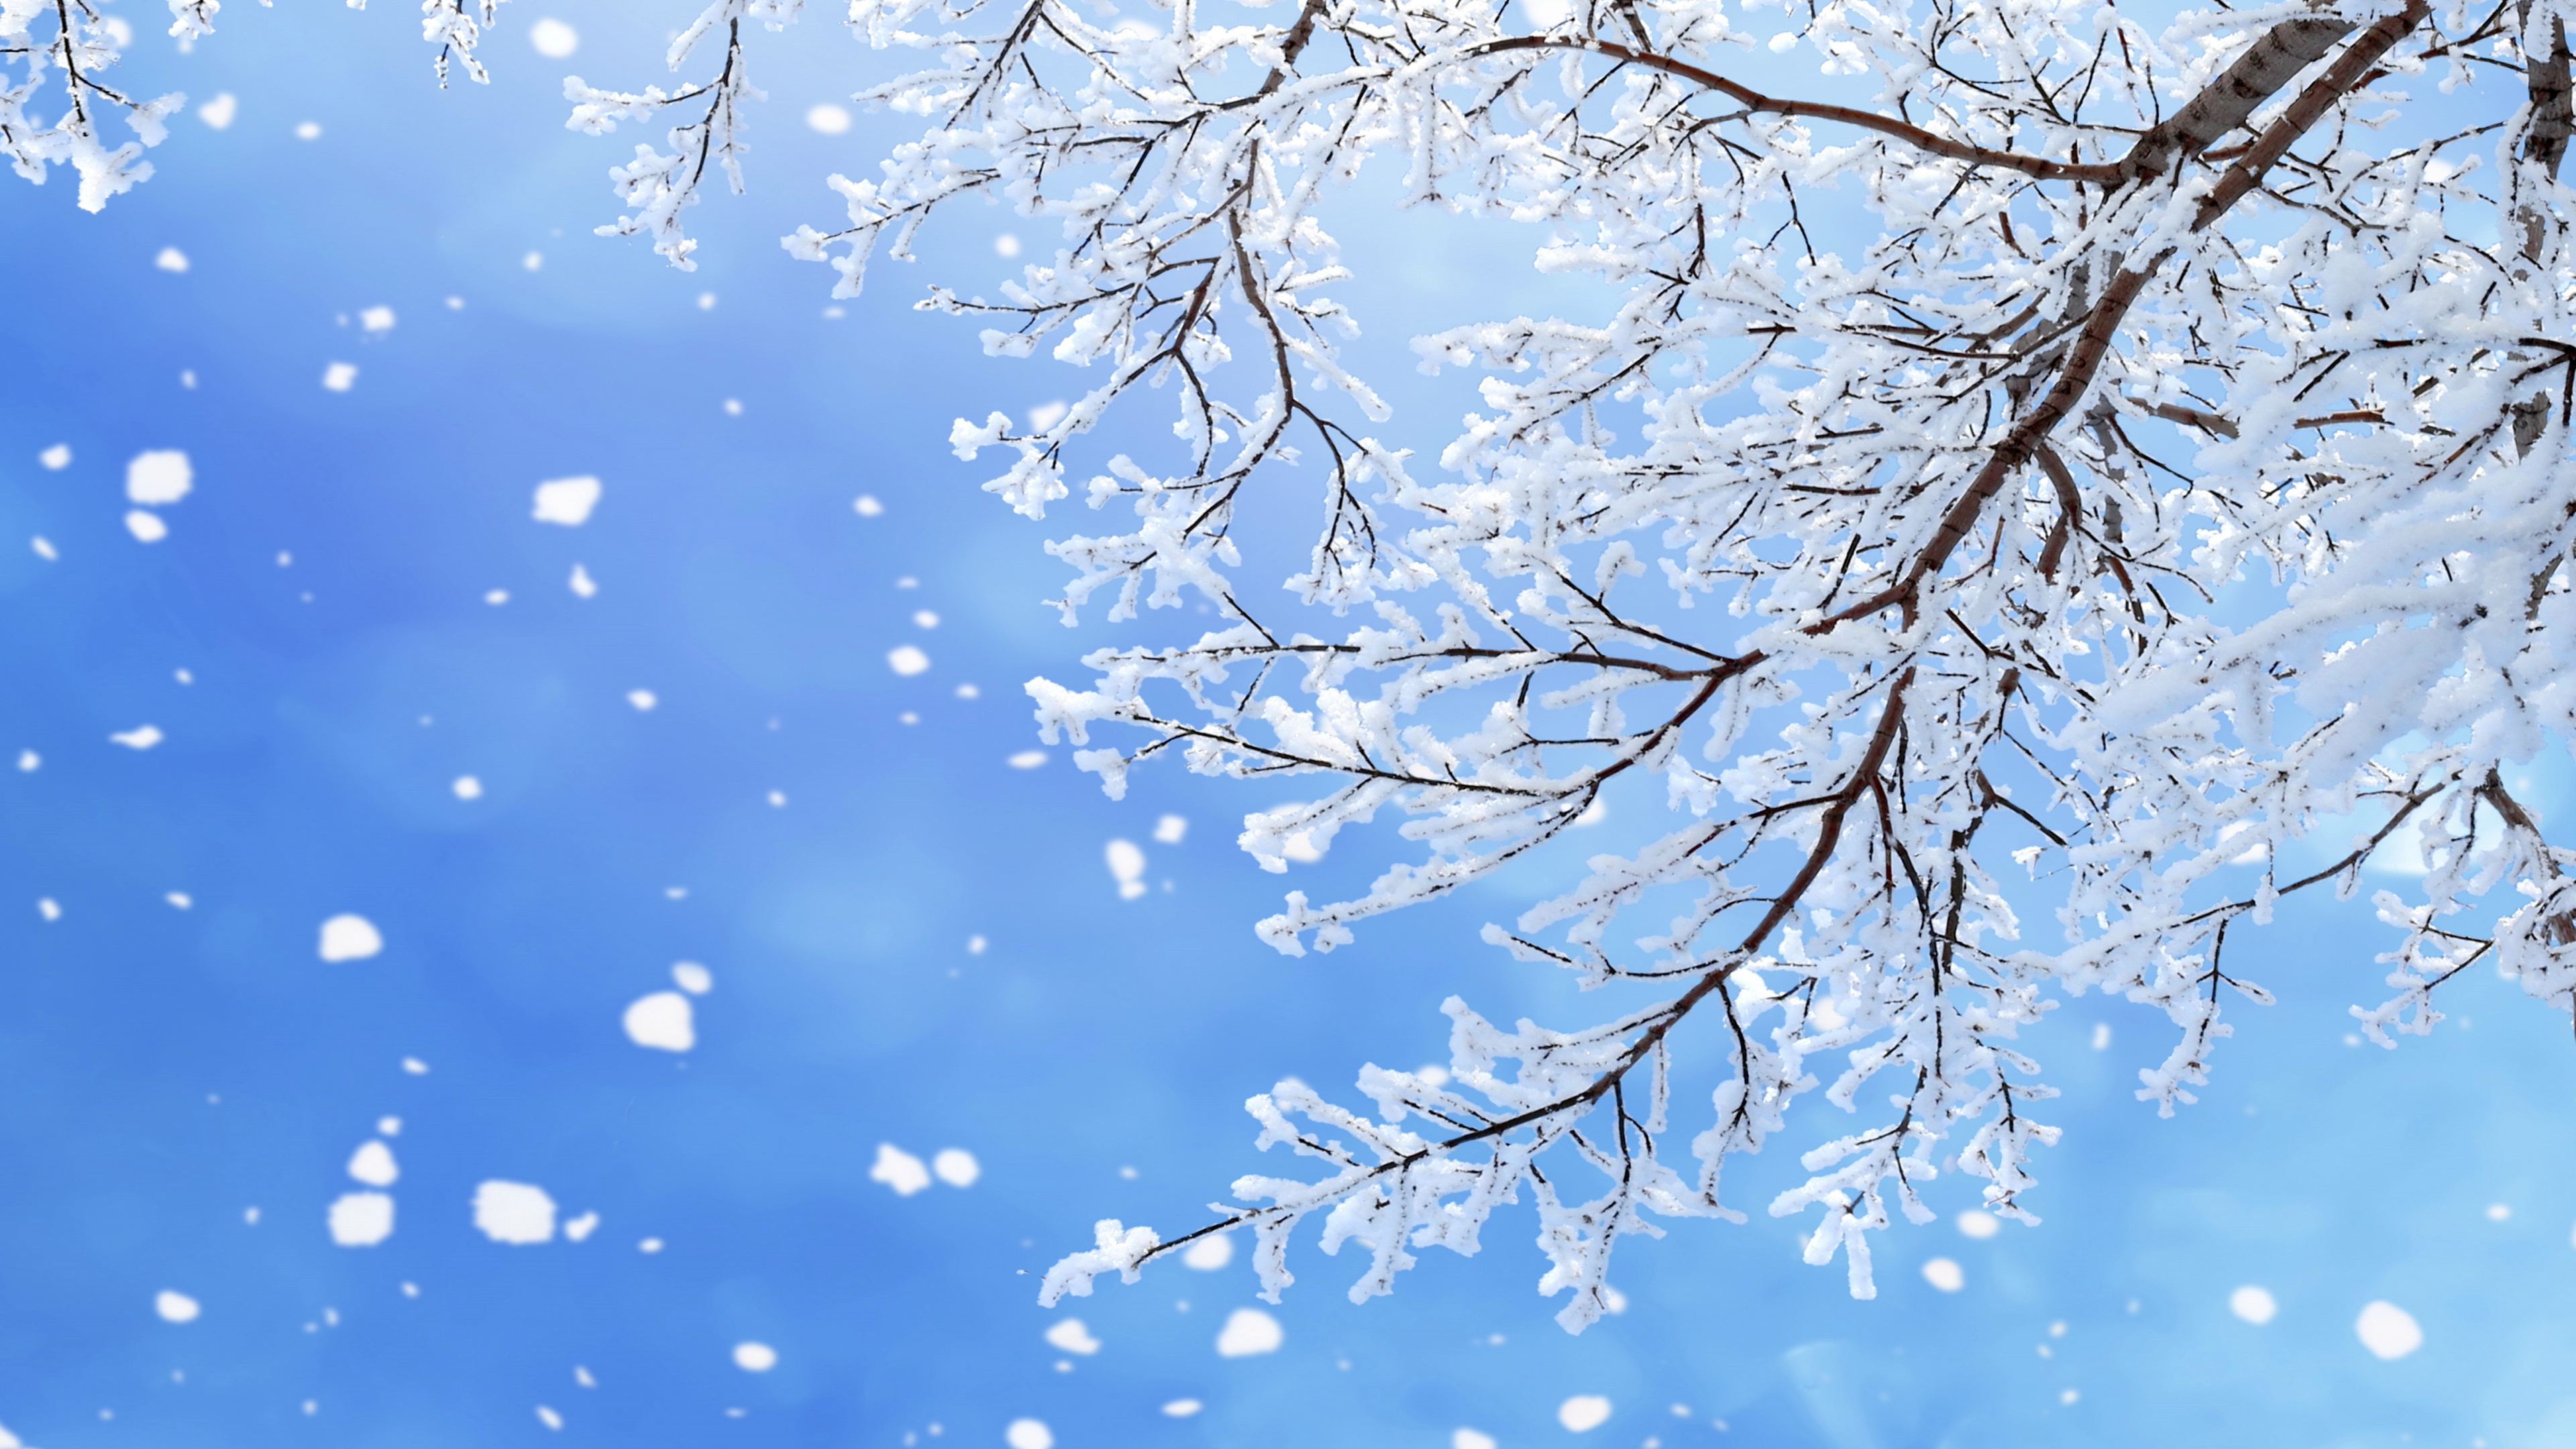 冬天, 树枝, 雪花, 季节, 冻结 壁纸 3840x2160 允许